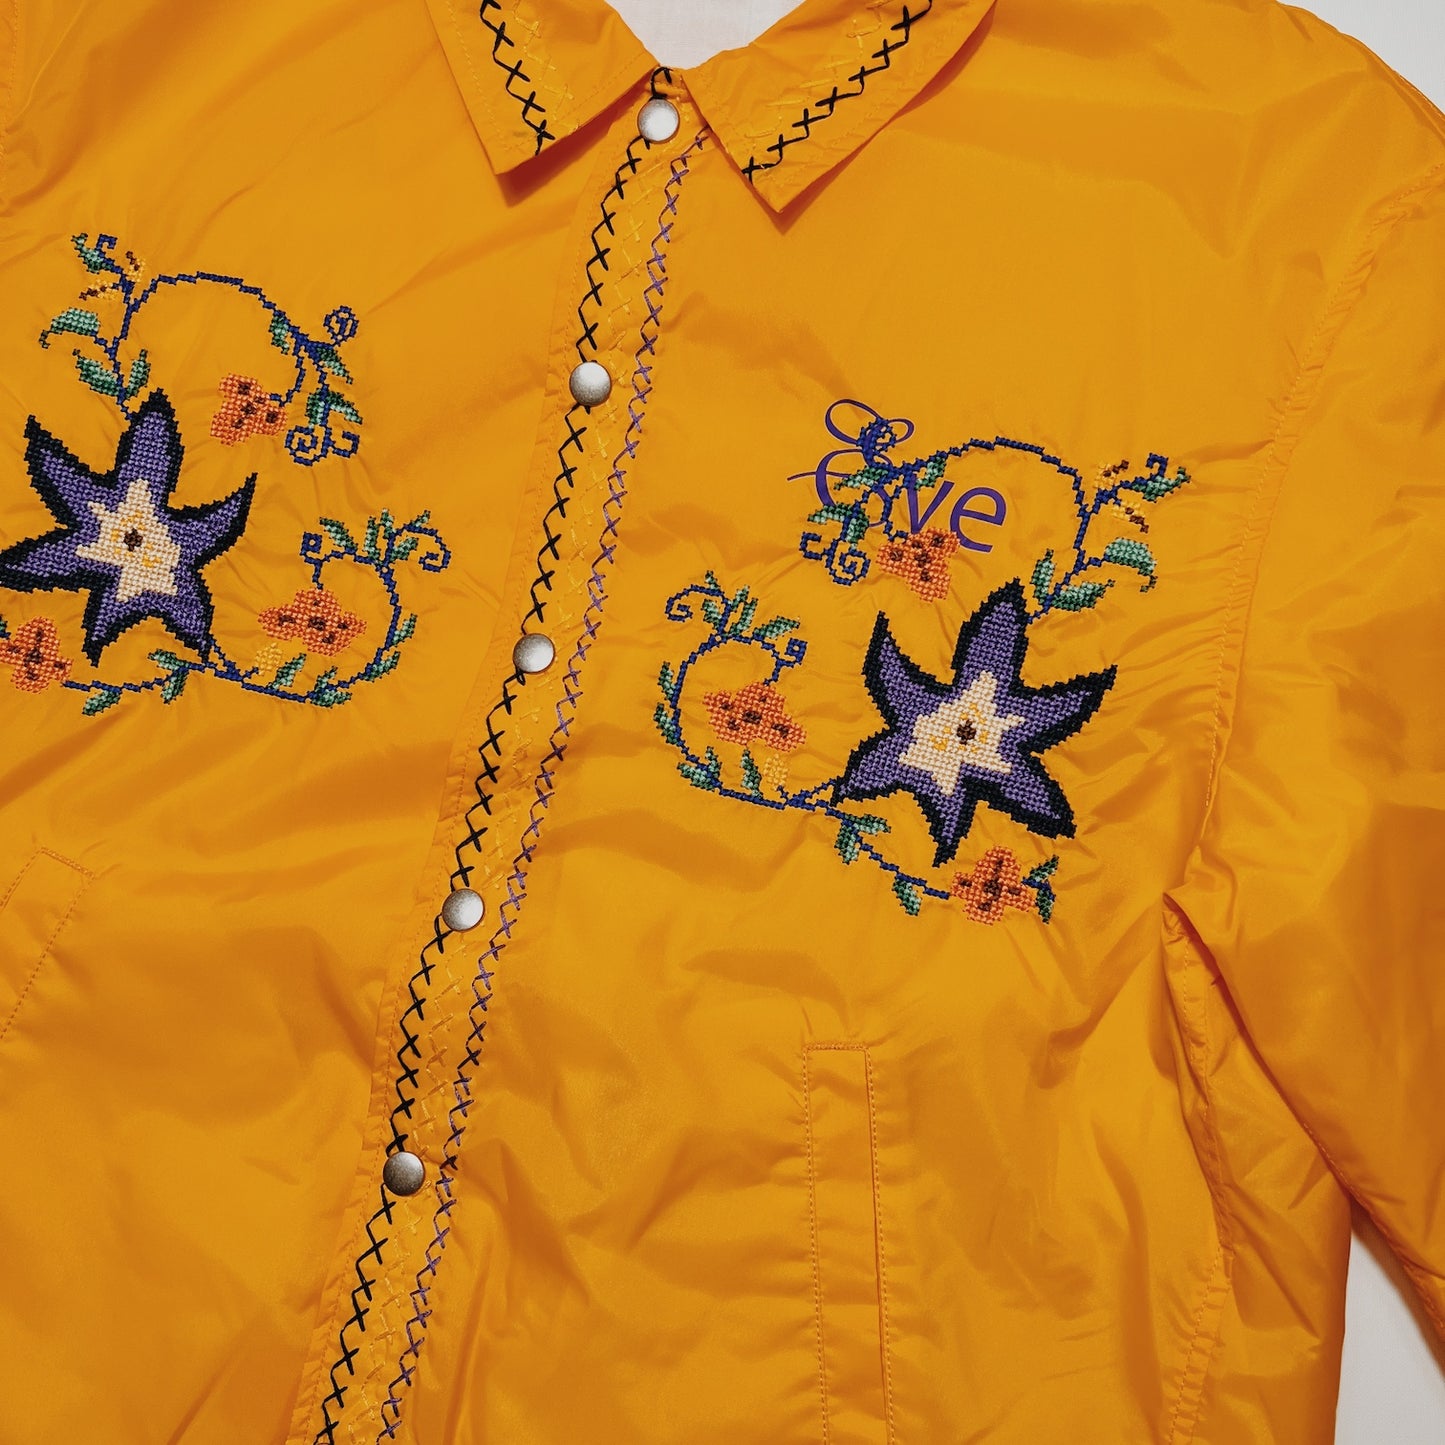 Cross-stitch coach jacket Yellow